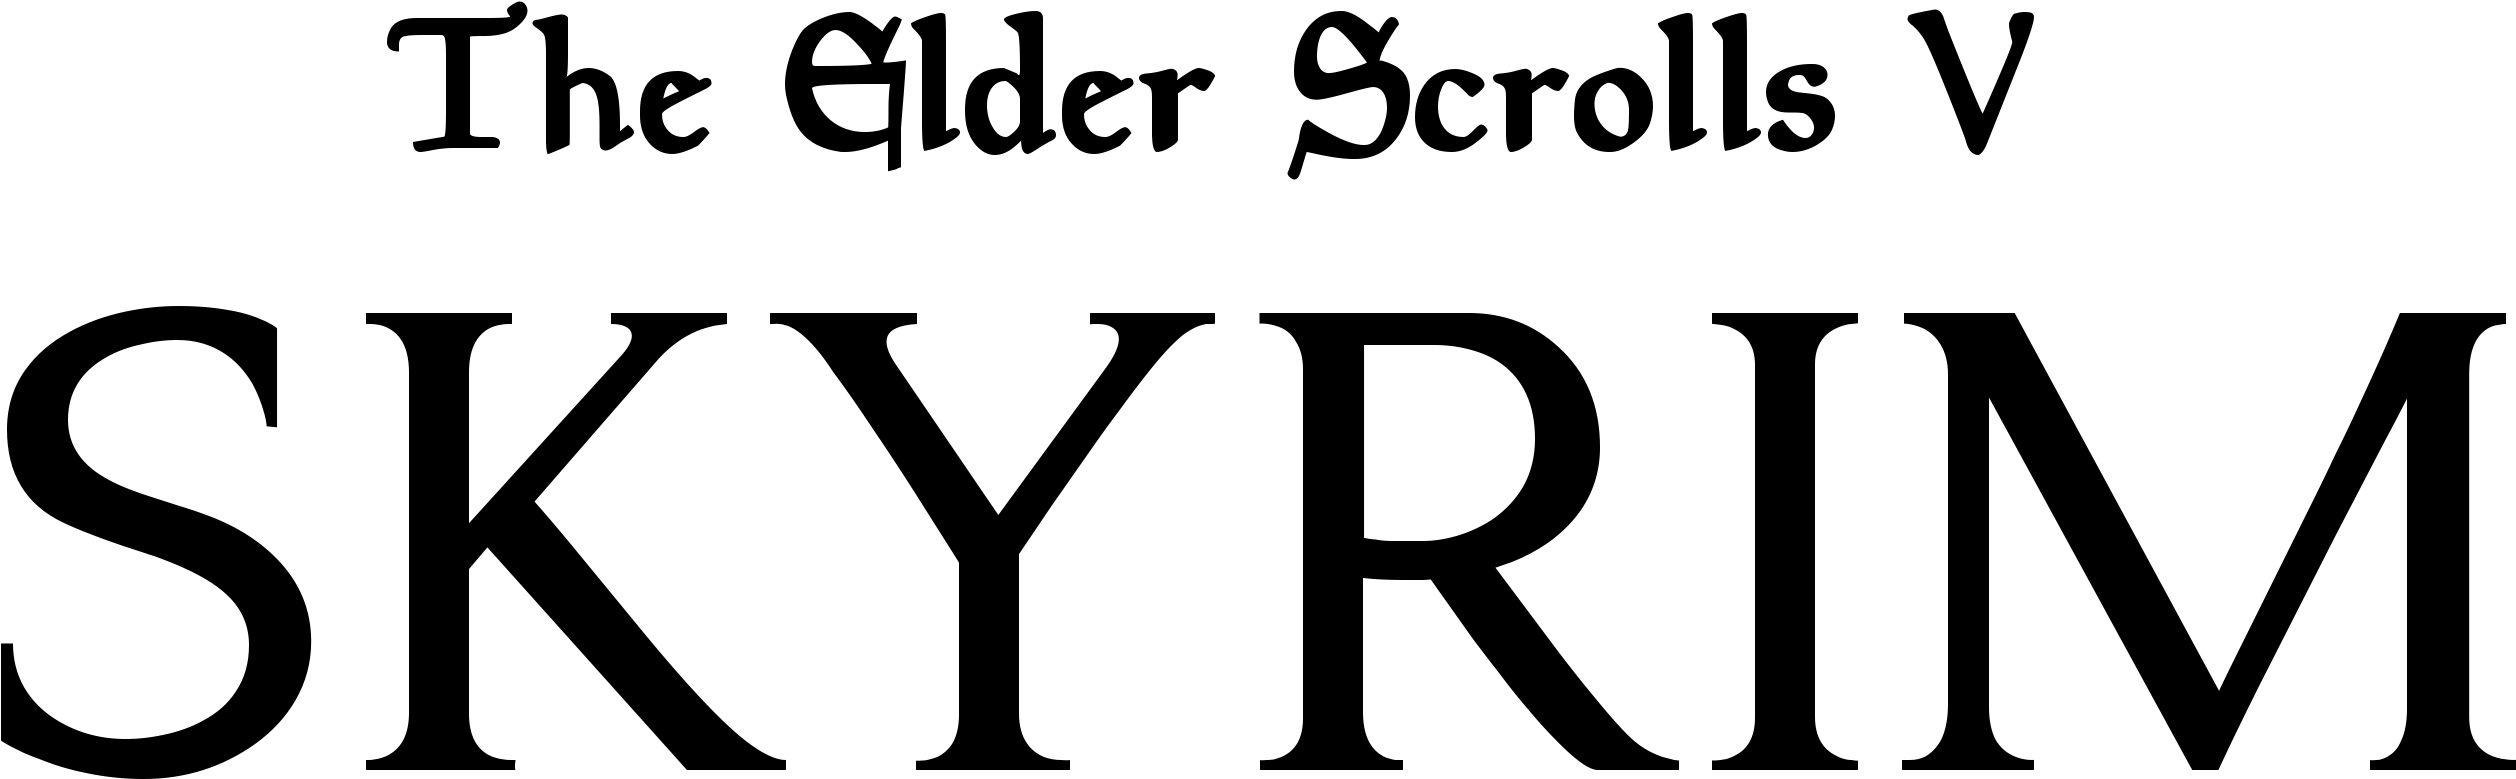 Skyrim Video Game Logo PNG image